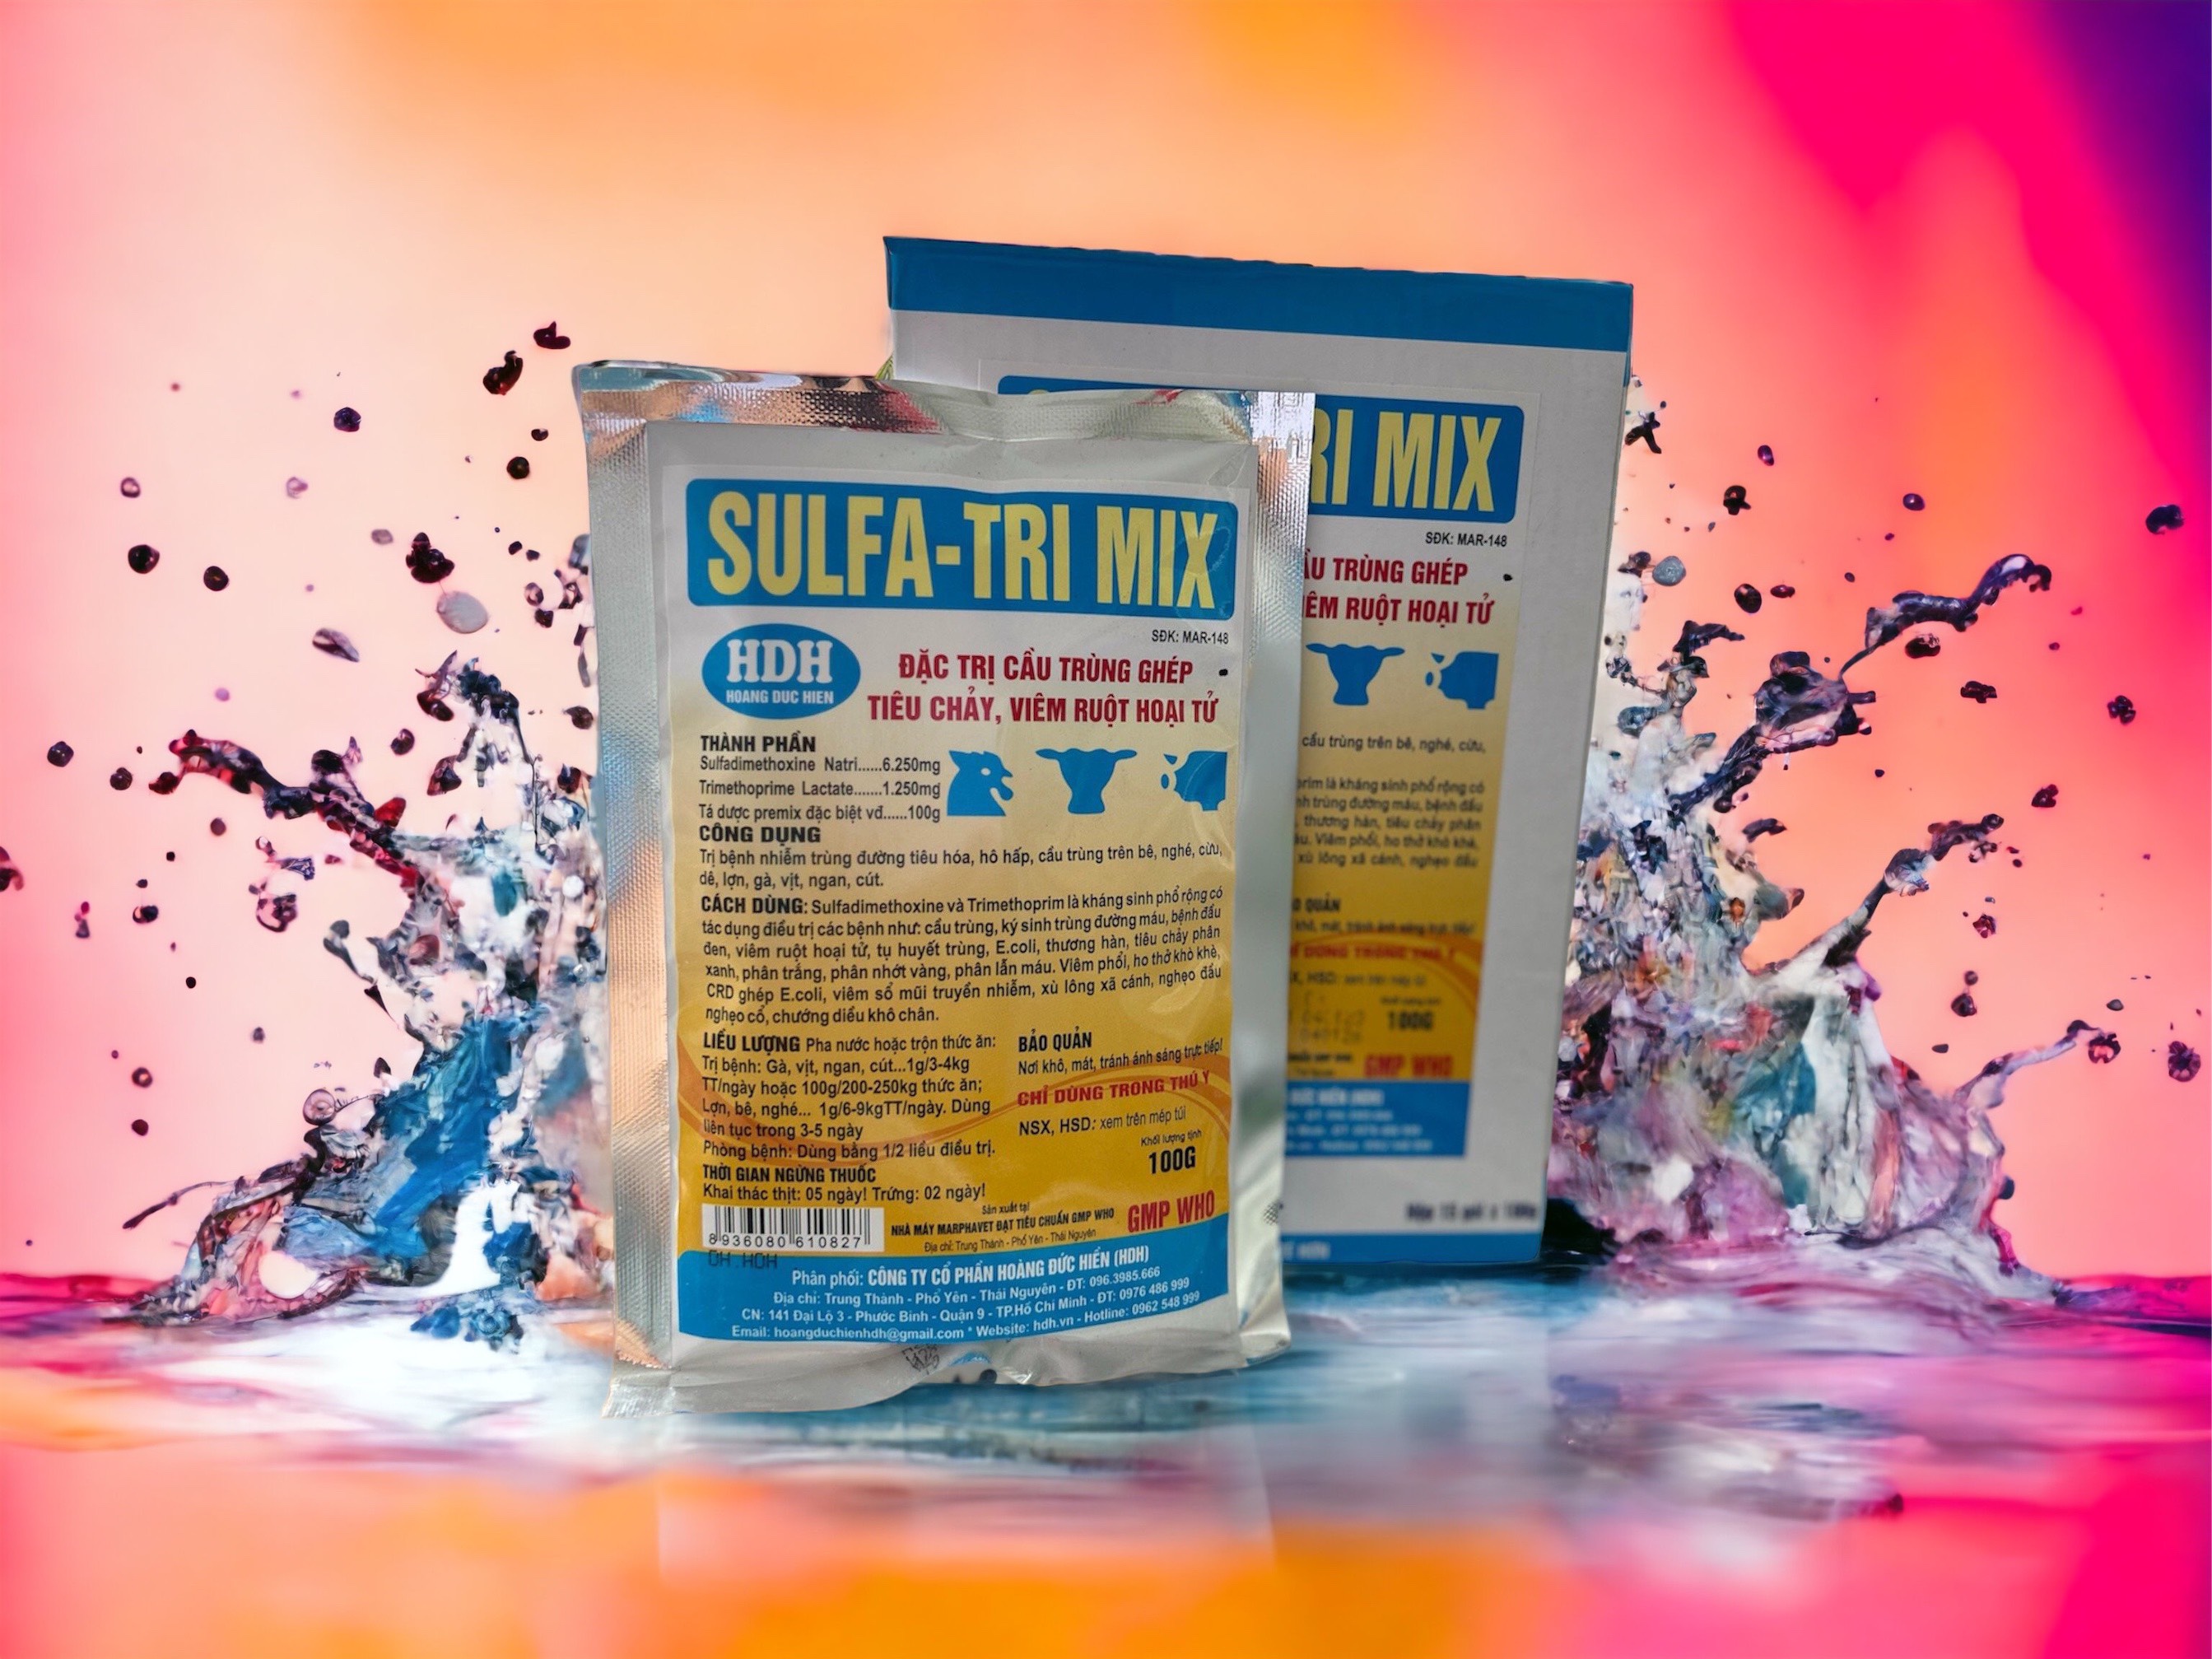 Sulfa-tri mix 100g x 1 gói dứt điểm bệnh tiêu chảy phân xanh phân sáp cầu trùng thương hàn gà vịt